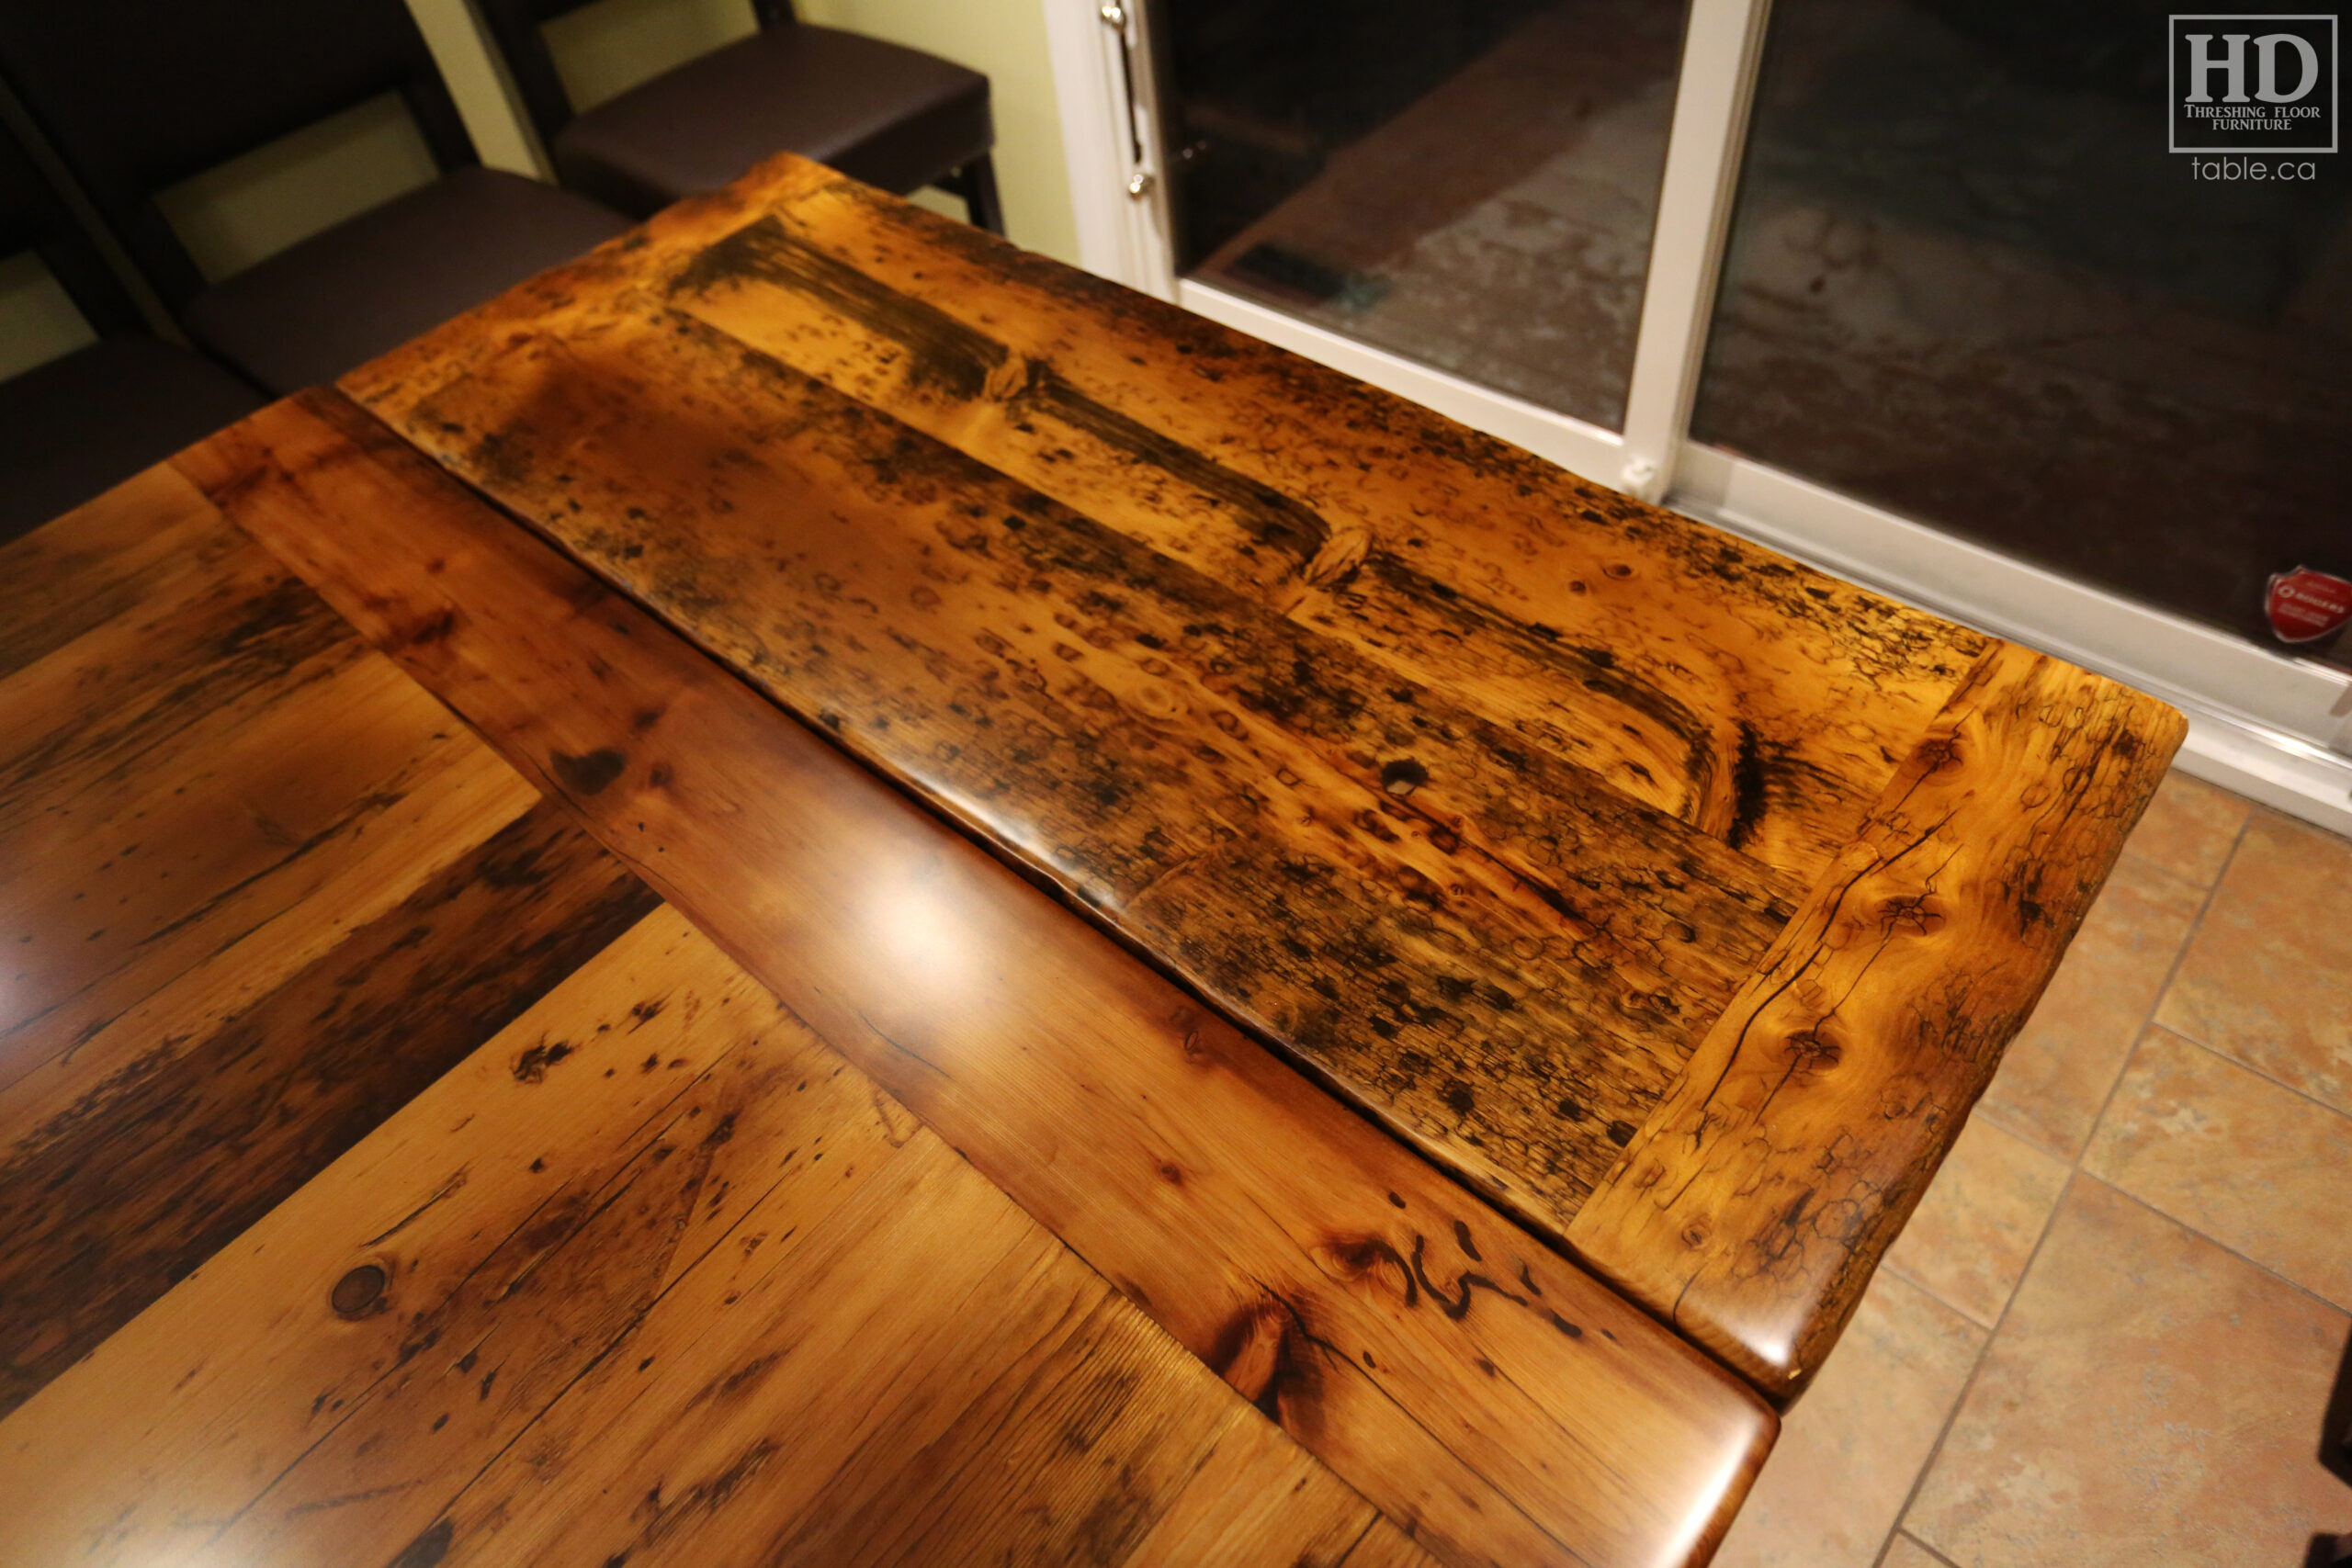 Reclaimed Wood Metal Base Table by HD Threshing Floor Furniture / www.table.ca